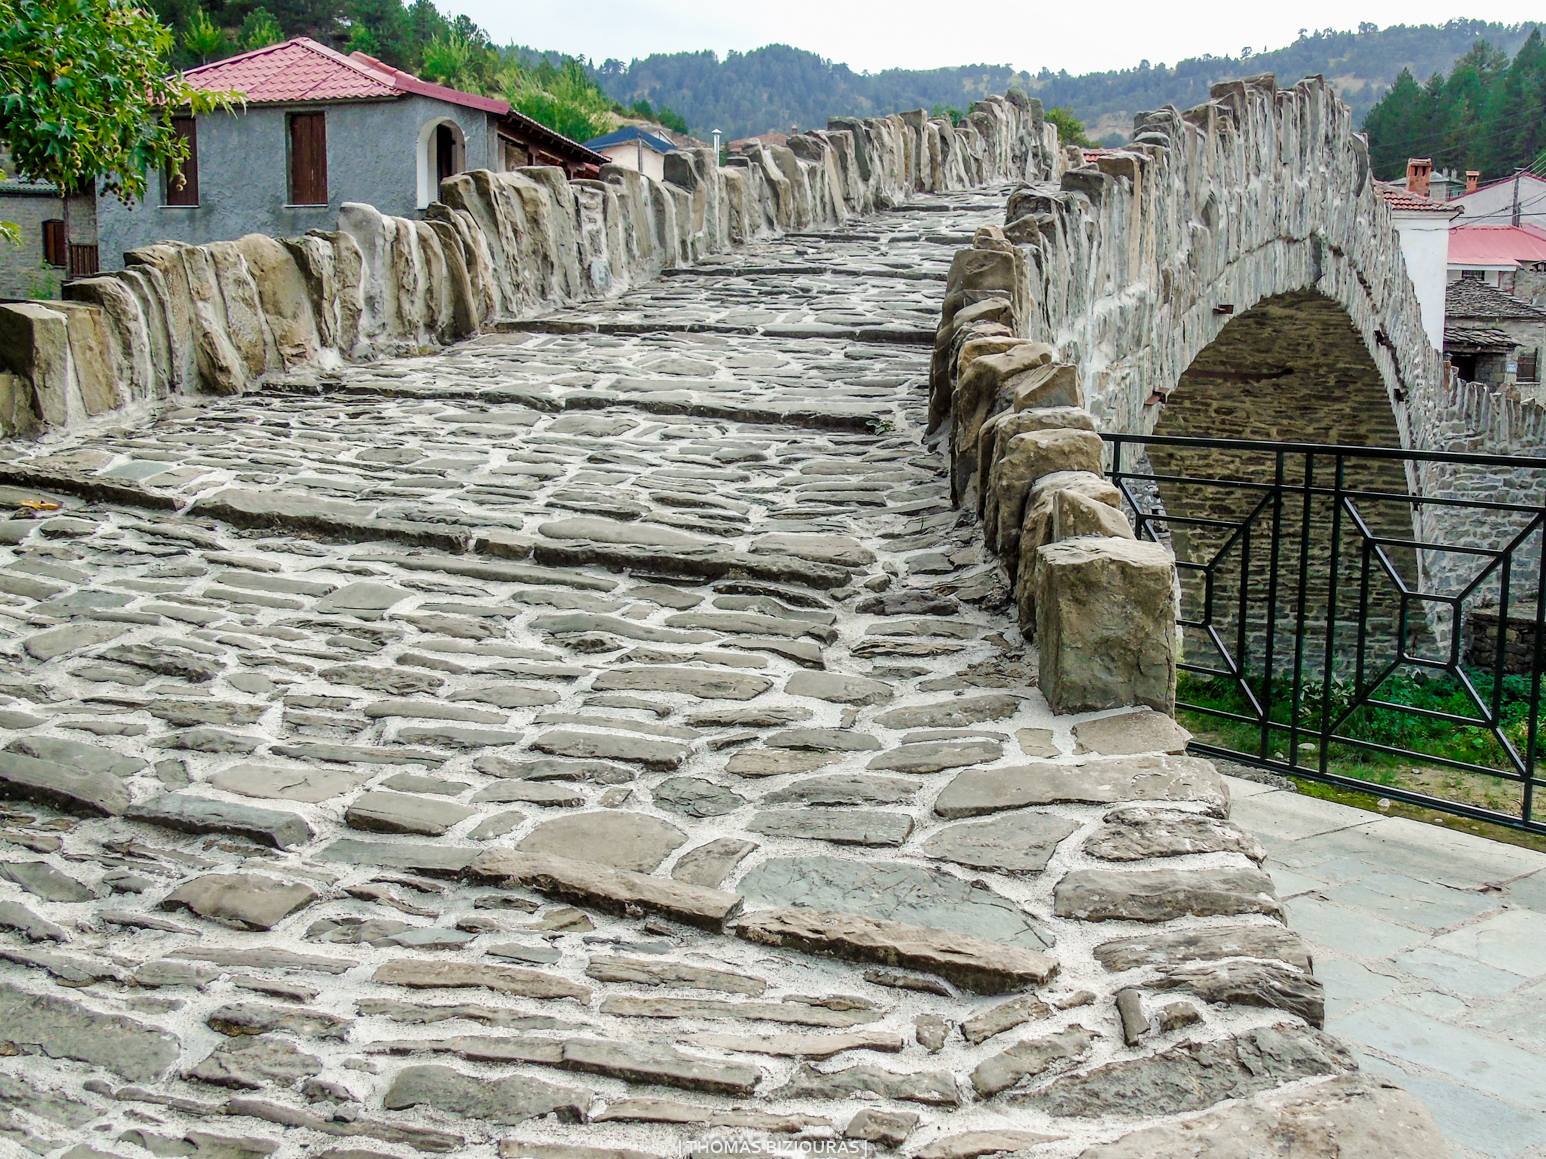 ΔΟΤΣΙΚΟ ΓΡΕΒΕΝΩΝ - Πρόκειται για ένα πέτρινο παραδοσιακό χωριό με  ένα πανέμορφο μονότοξο πετρόκτιστο γεφύρι 1